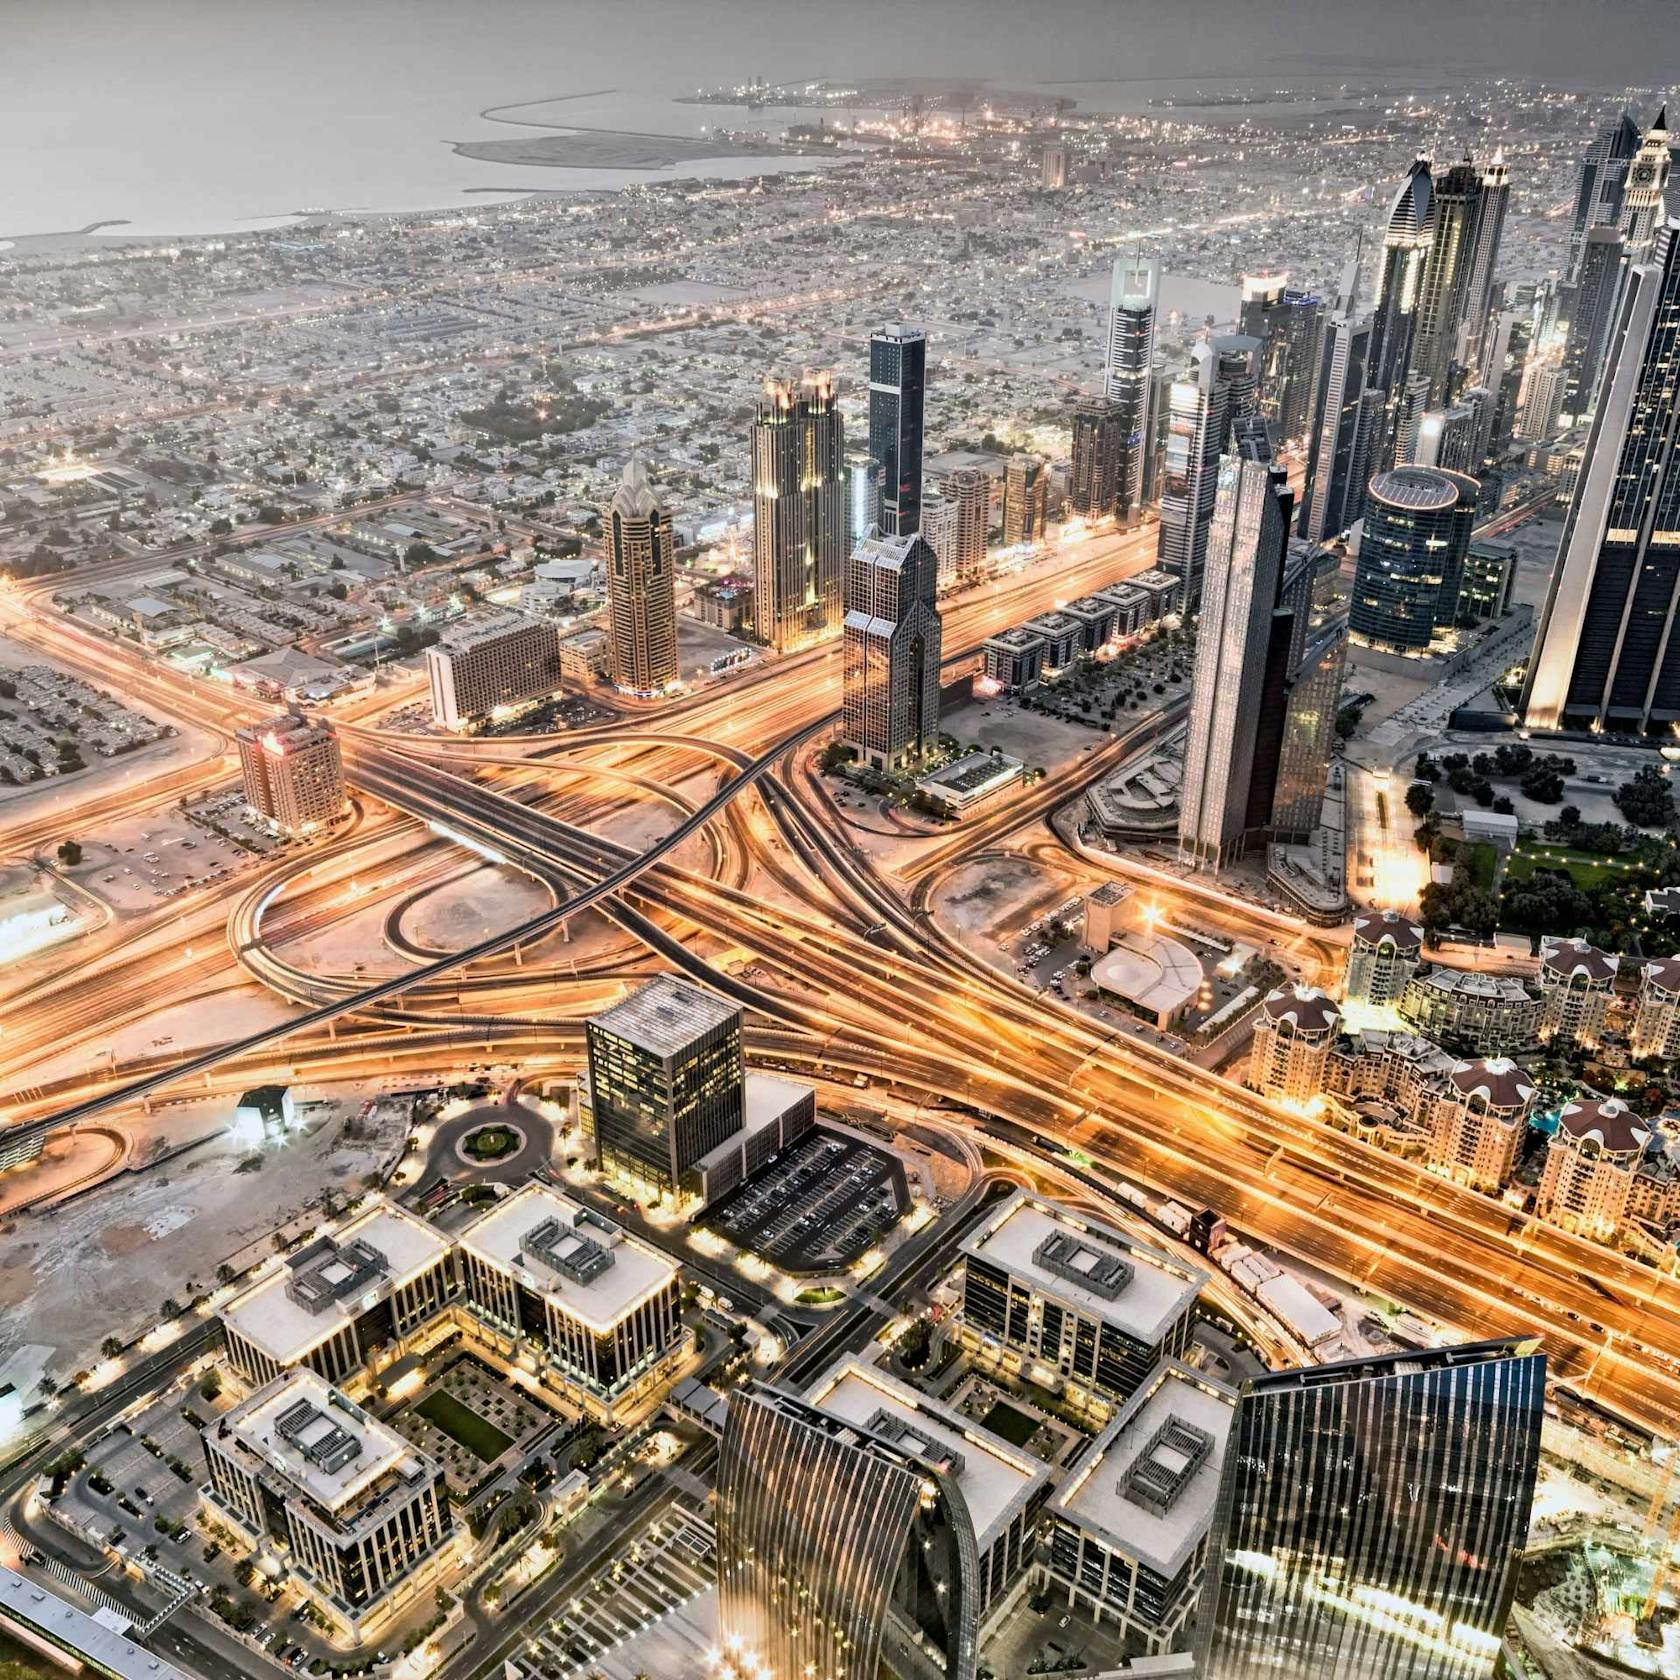 City of Dubai by night